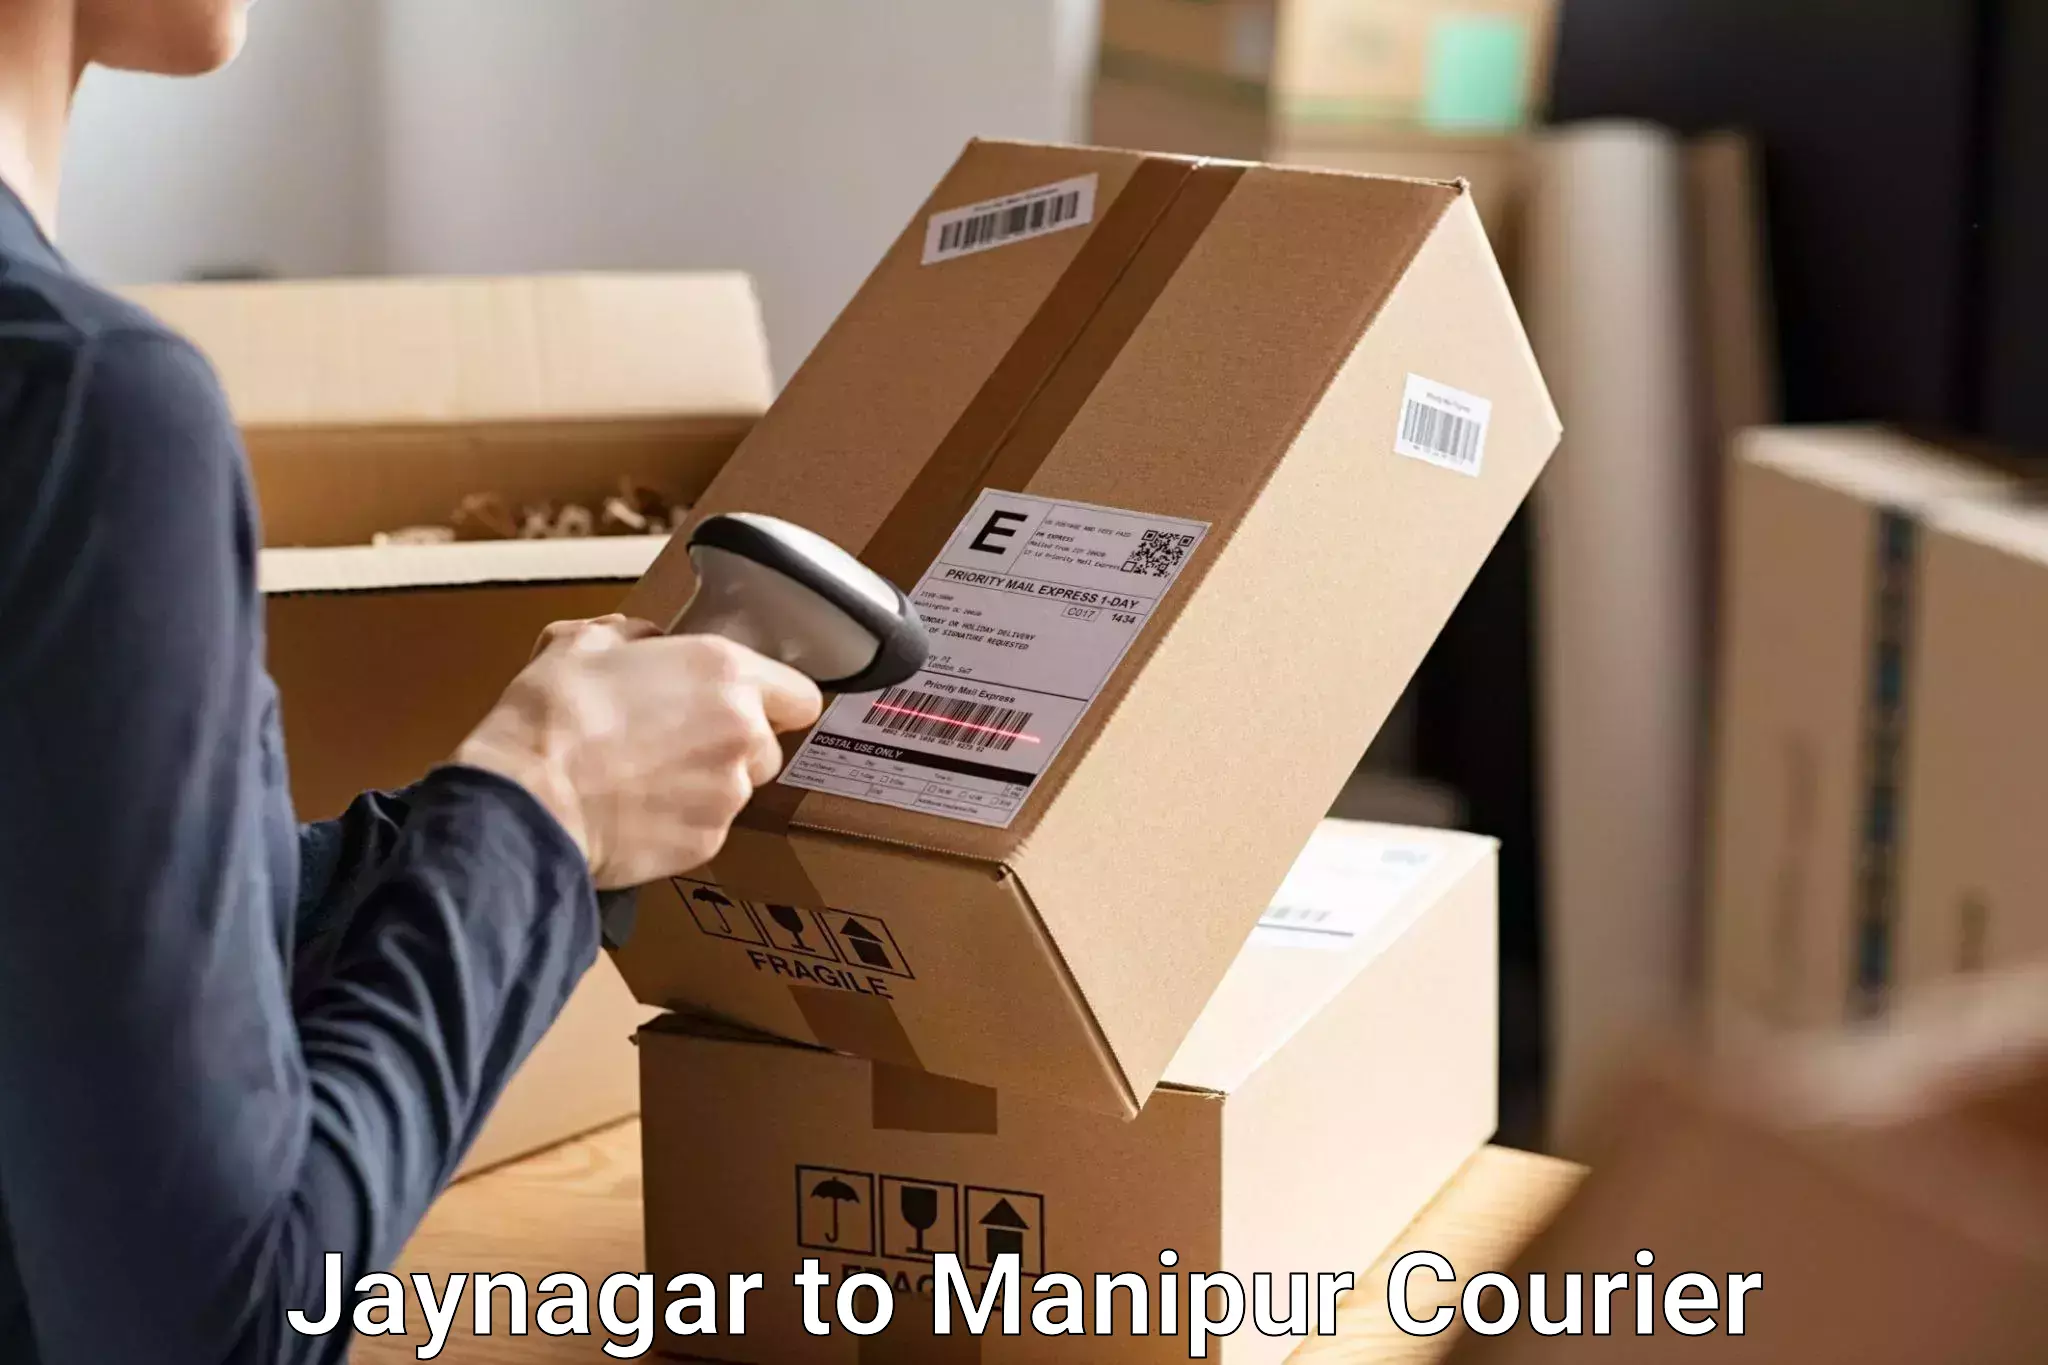 Baggage transport scheduler Jaynagar to Jiribam